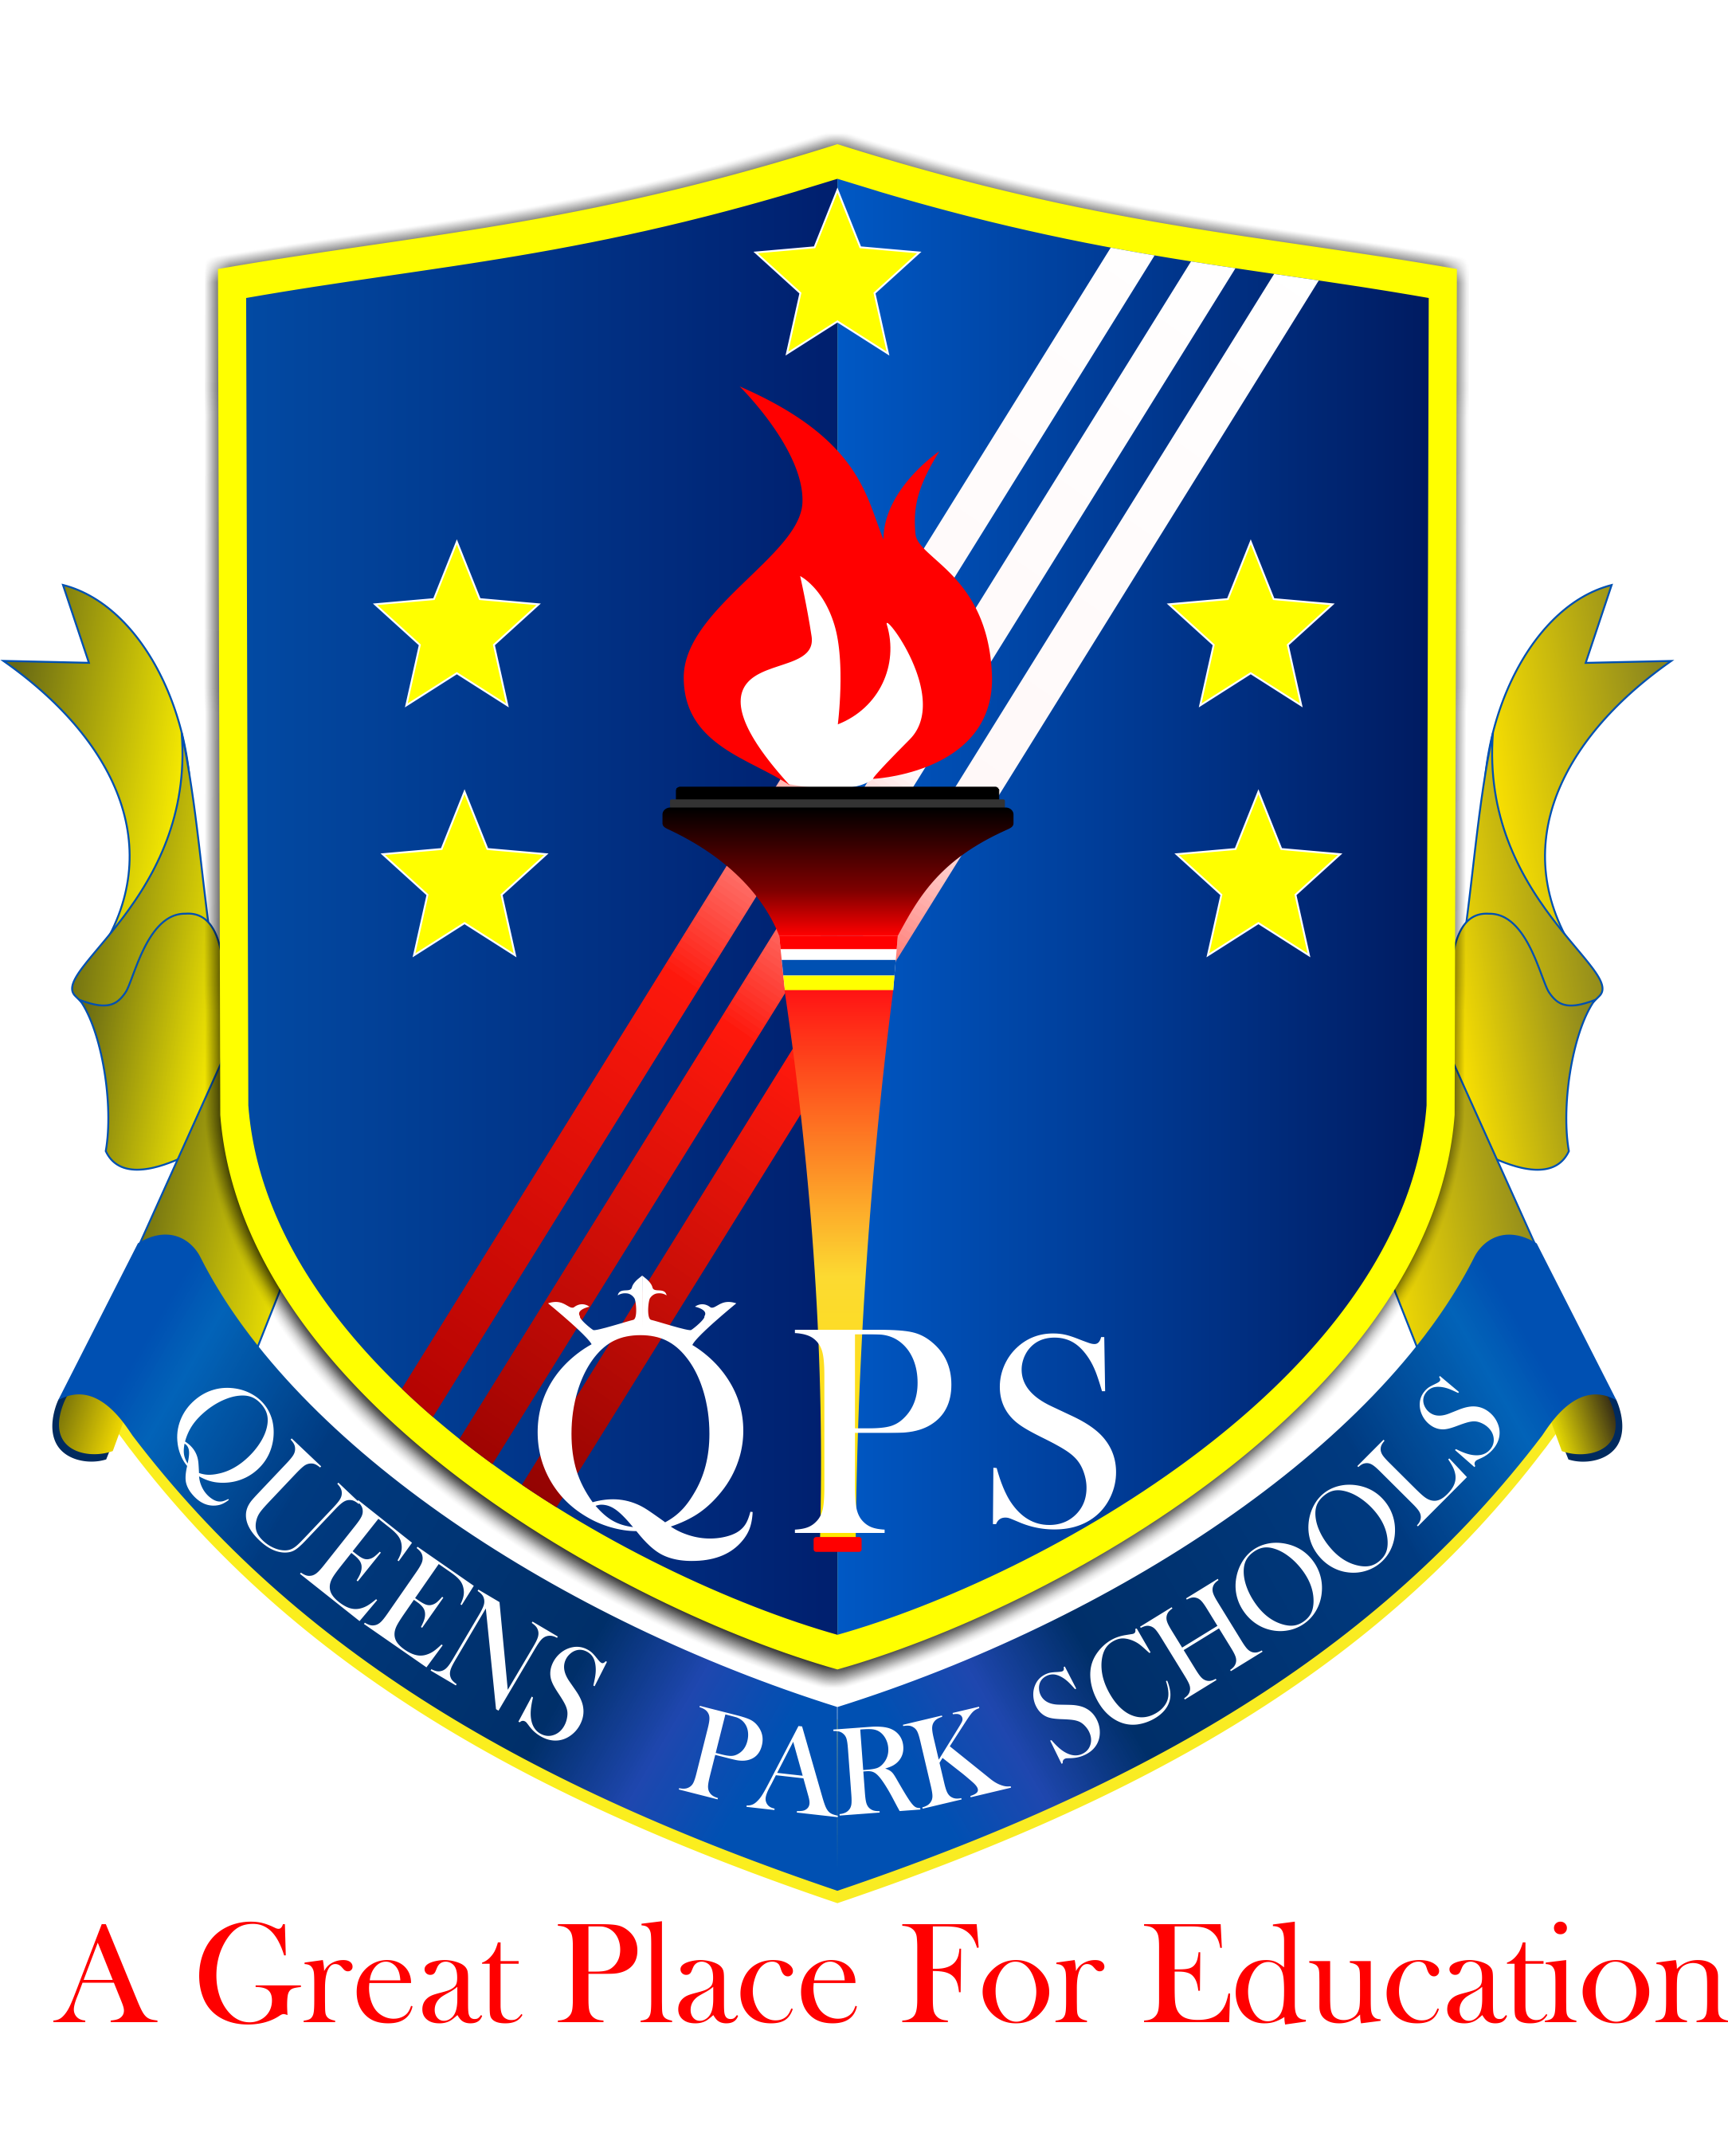 Queens Park School